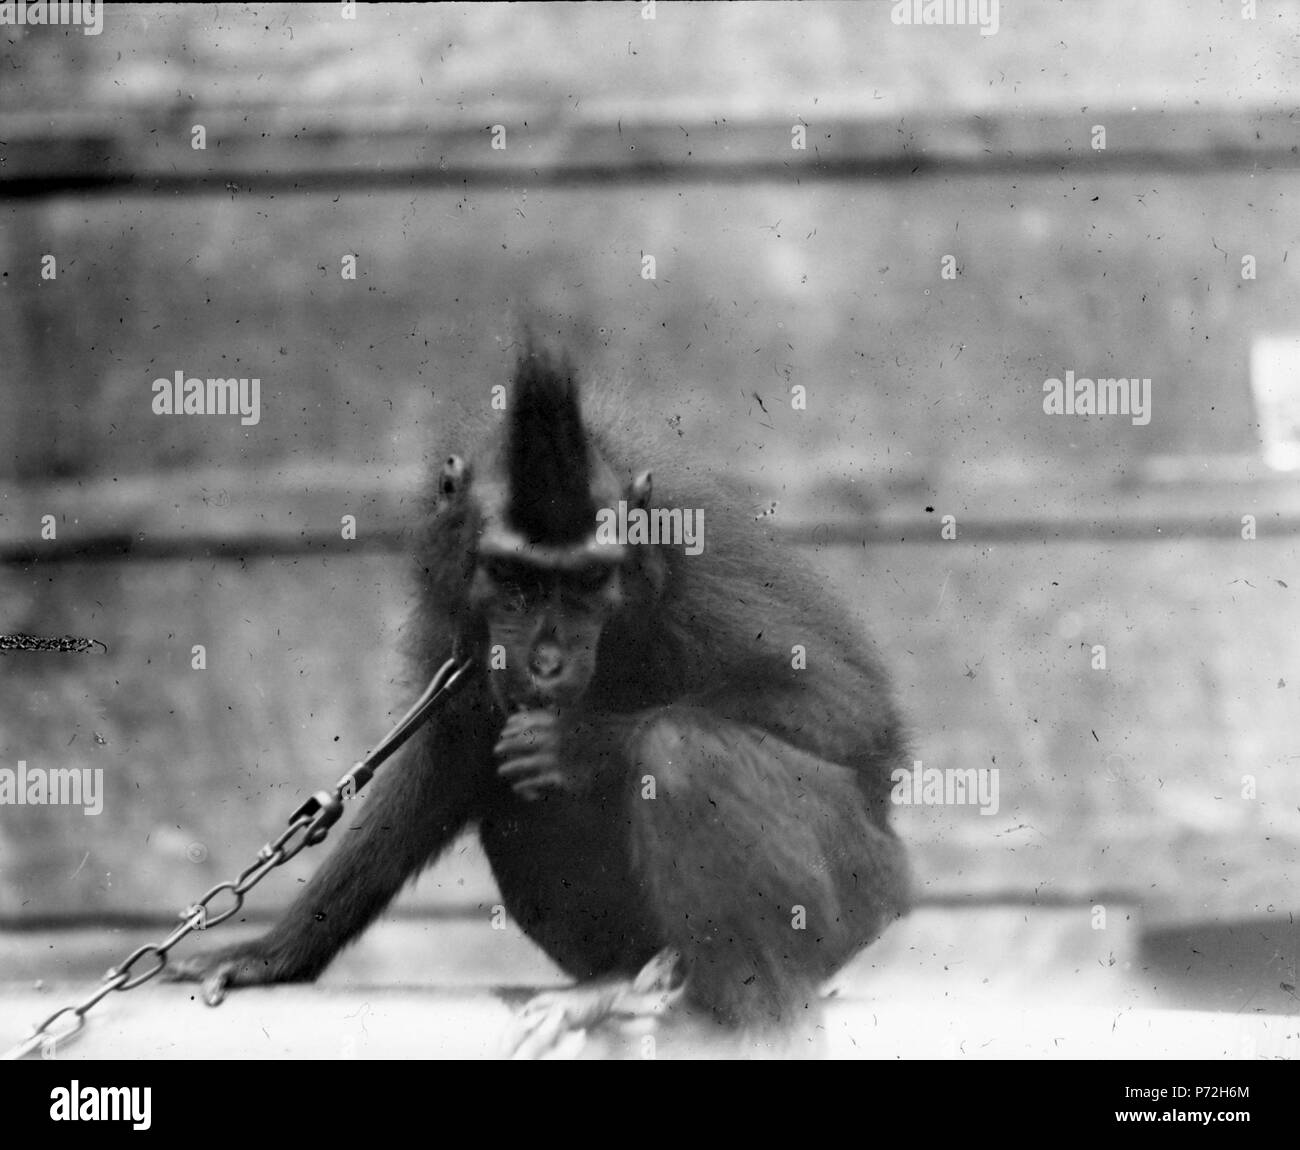 52 Svart apa (Cynopithecus niger). Kabupaten Bolaang Mongondow, Menado, Sulawesi. Indonesien - SMVK - 1976D Stock Photo